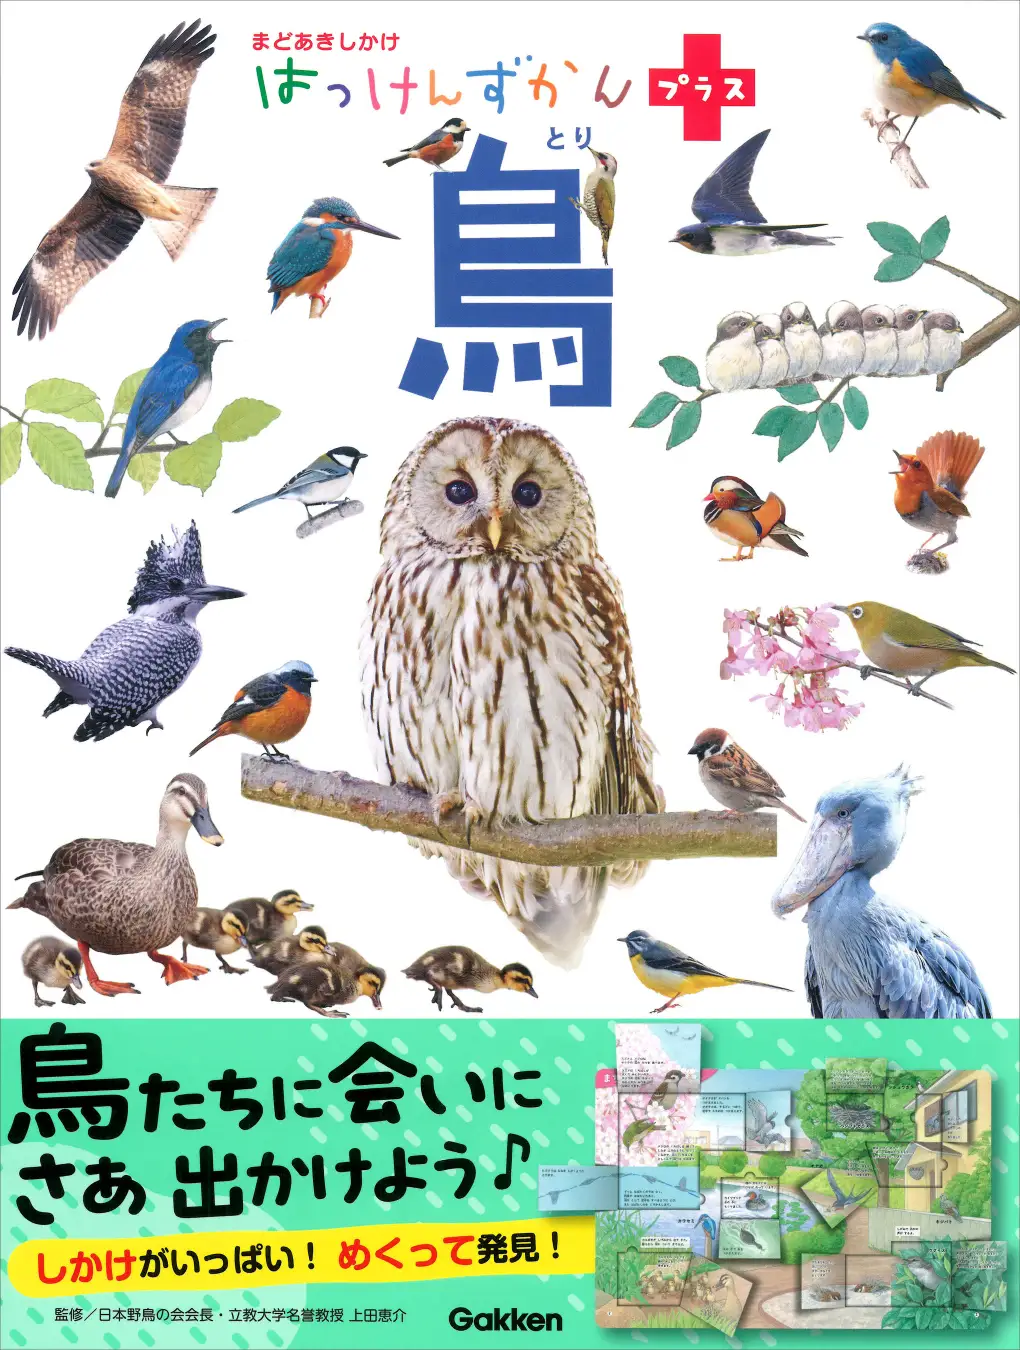 しかけをめくって鳥を発見できる図鑑『はっけんずかんプラス 鳥』発売！ 身近な鳥の世界を知ると、お散歩が楽しくなる♪